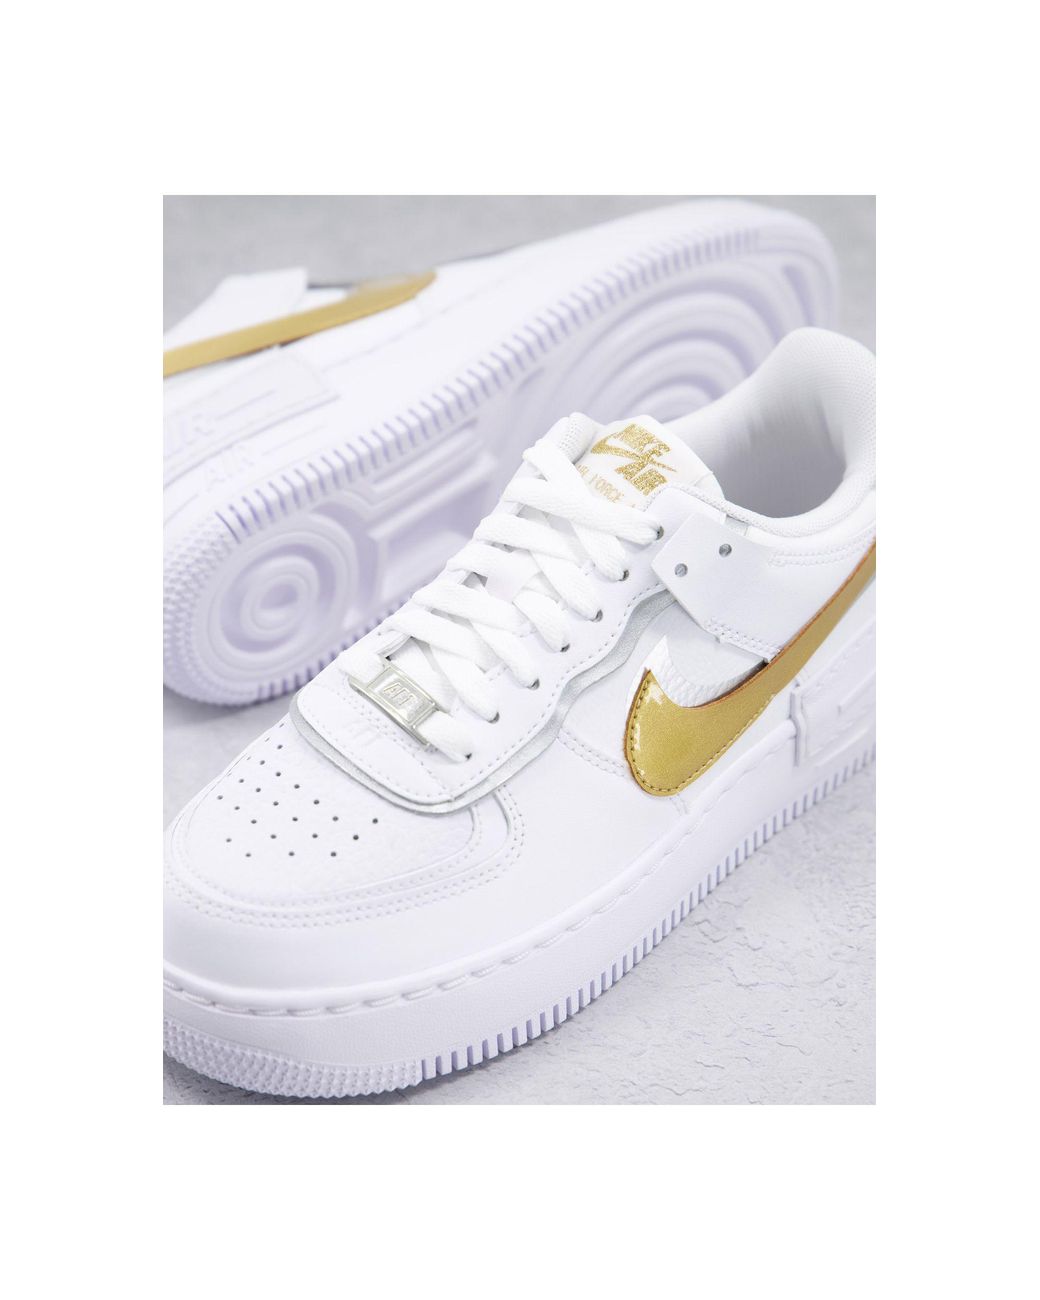 Niet verwacht Zichzelf puzzel Nike Air Force 1 Shadow - Sneakers In , Goud En Zilver in het Wit | Lyst NL